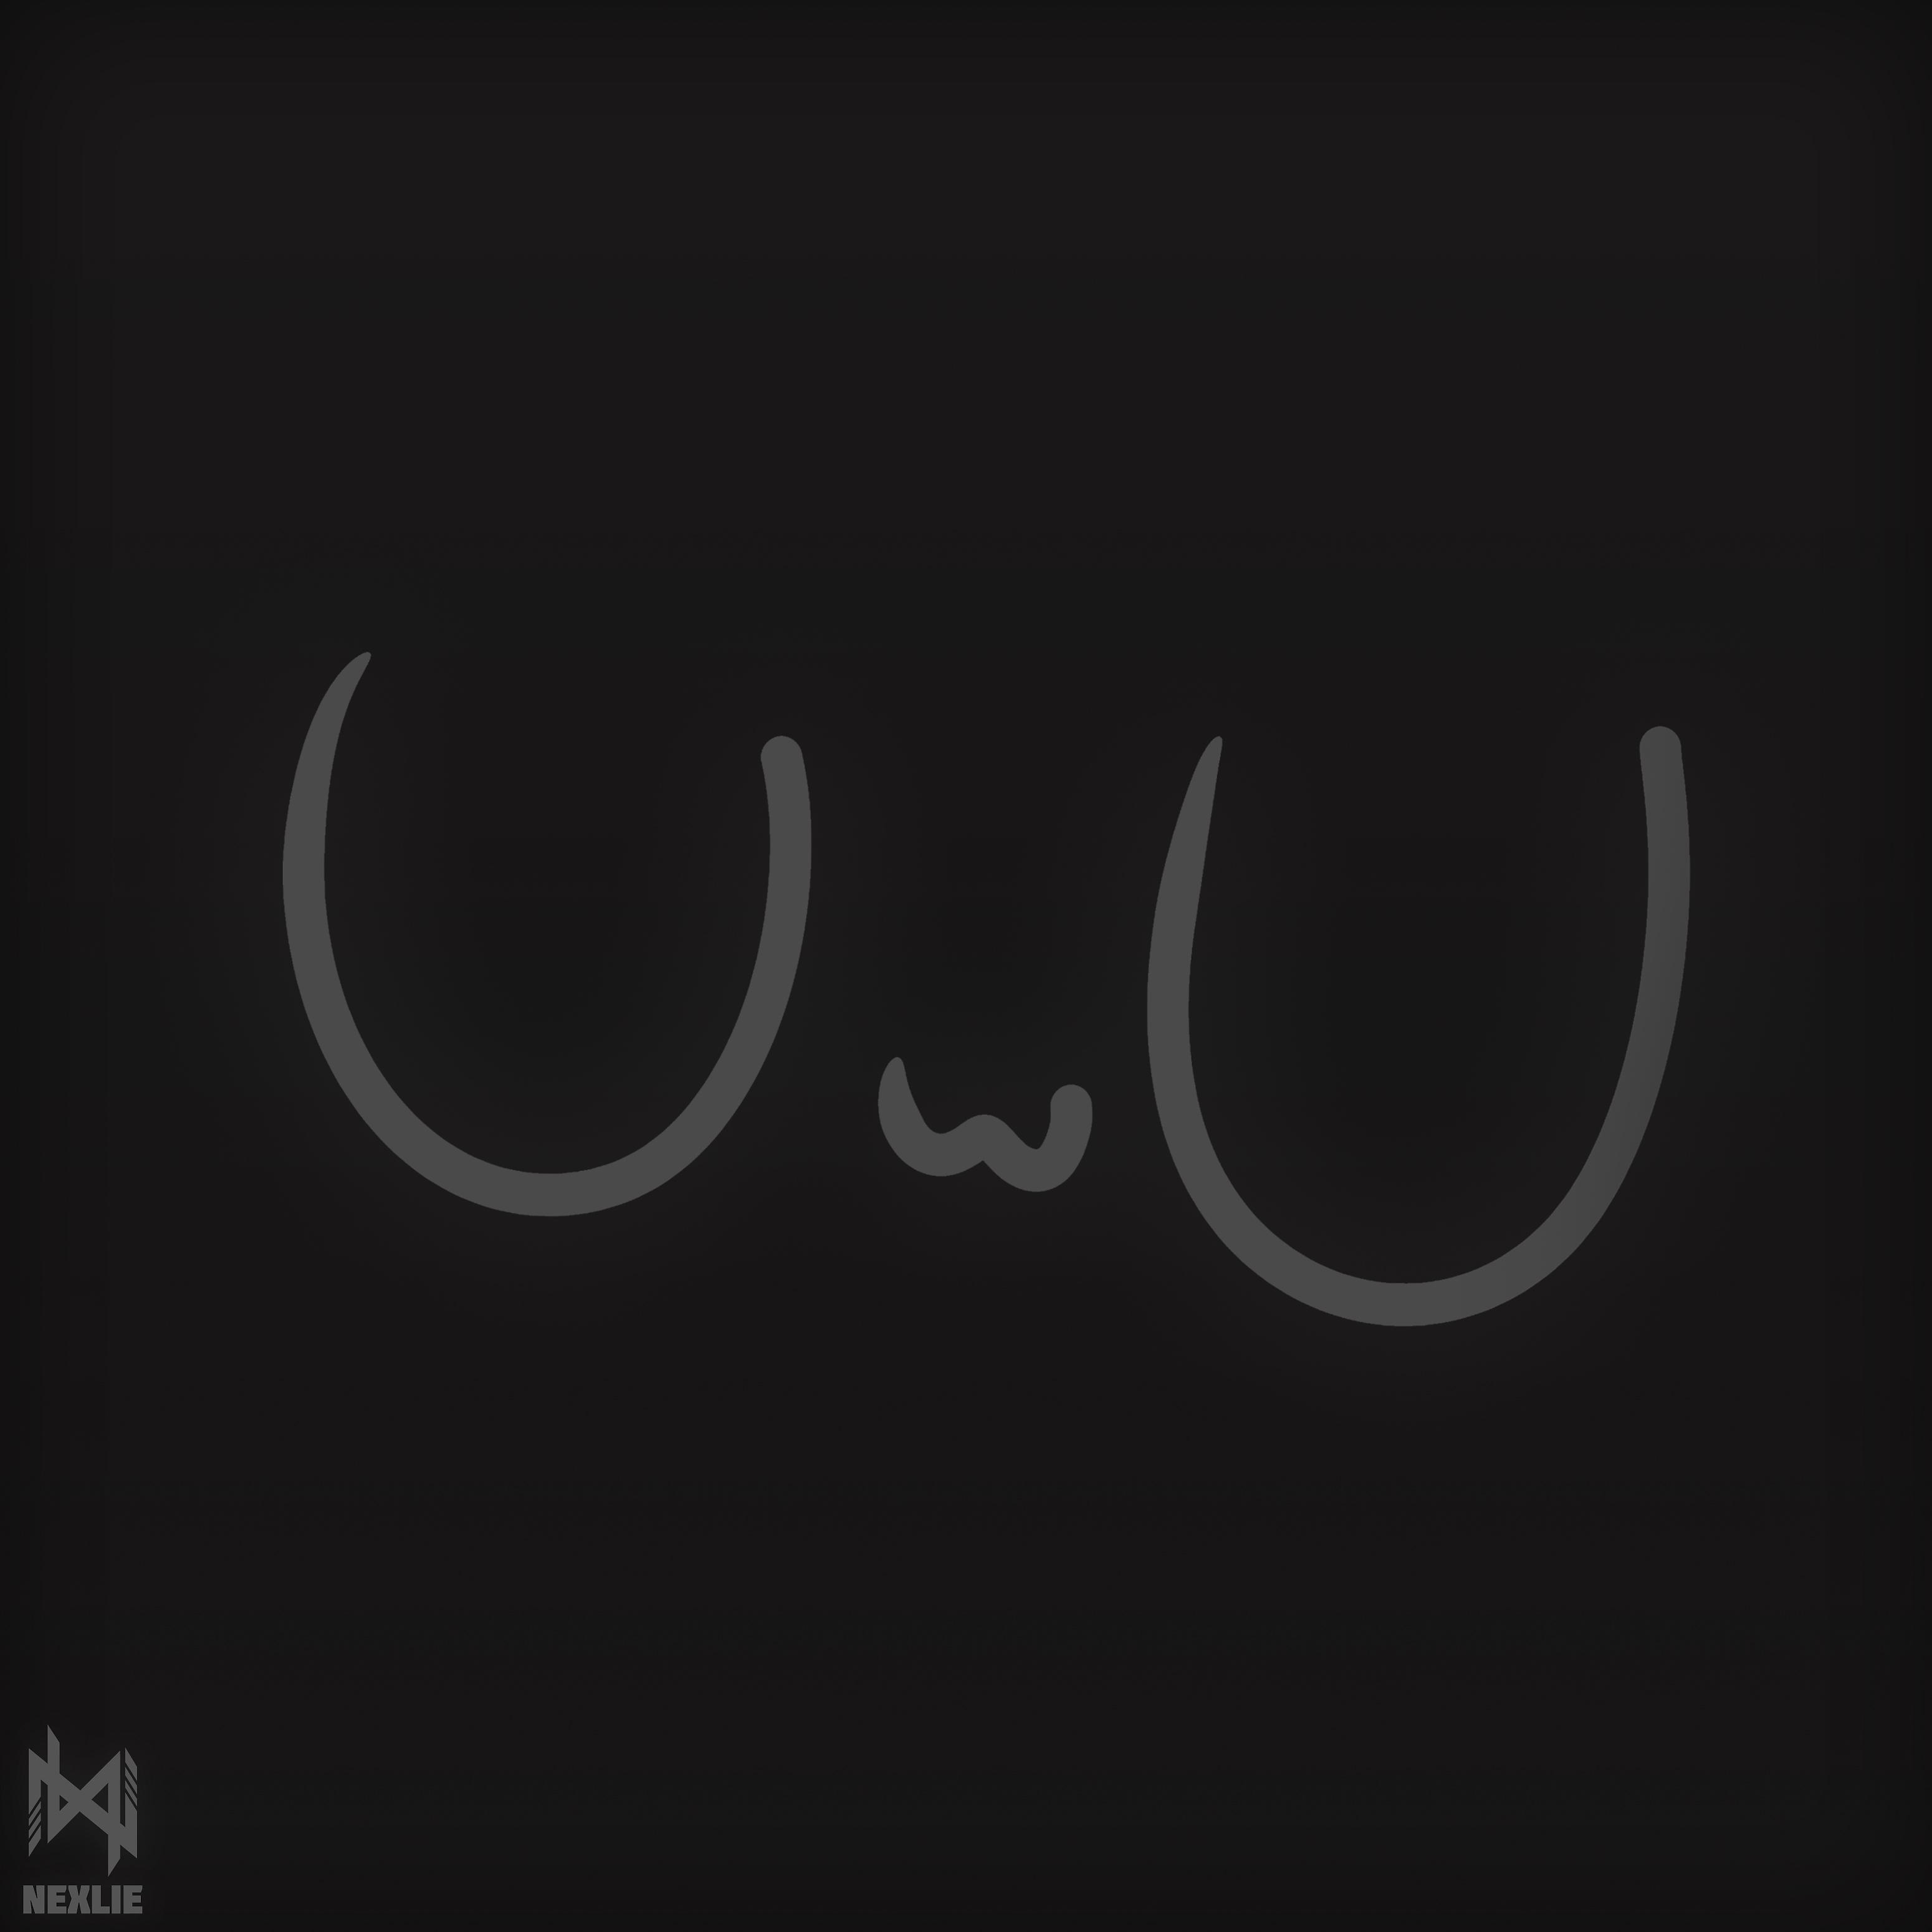 Постер альбома Uwu